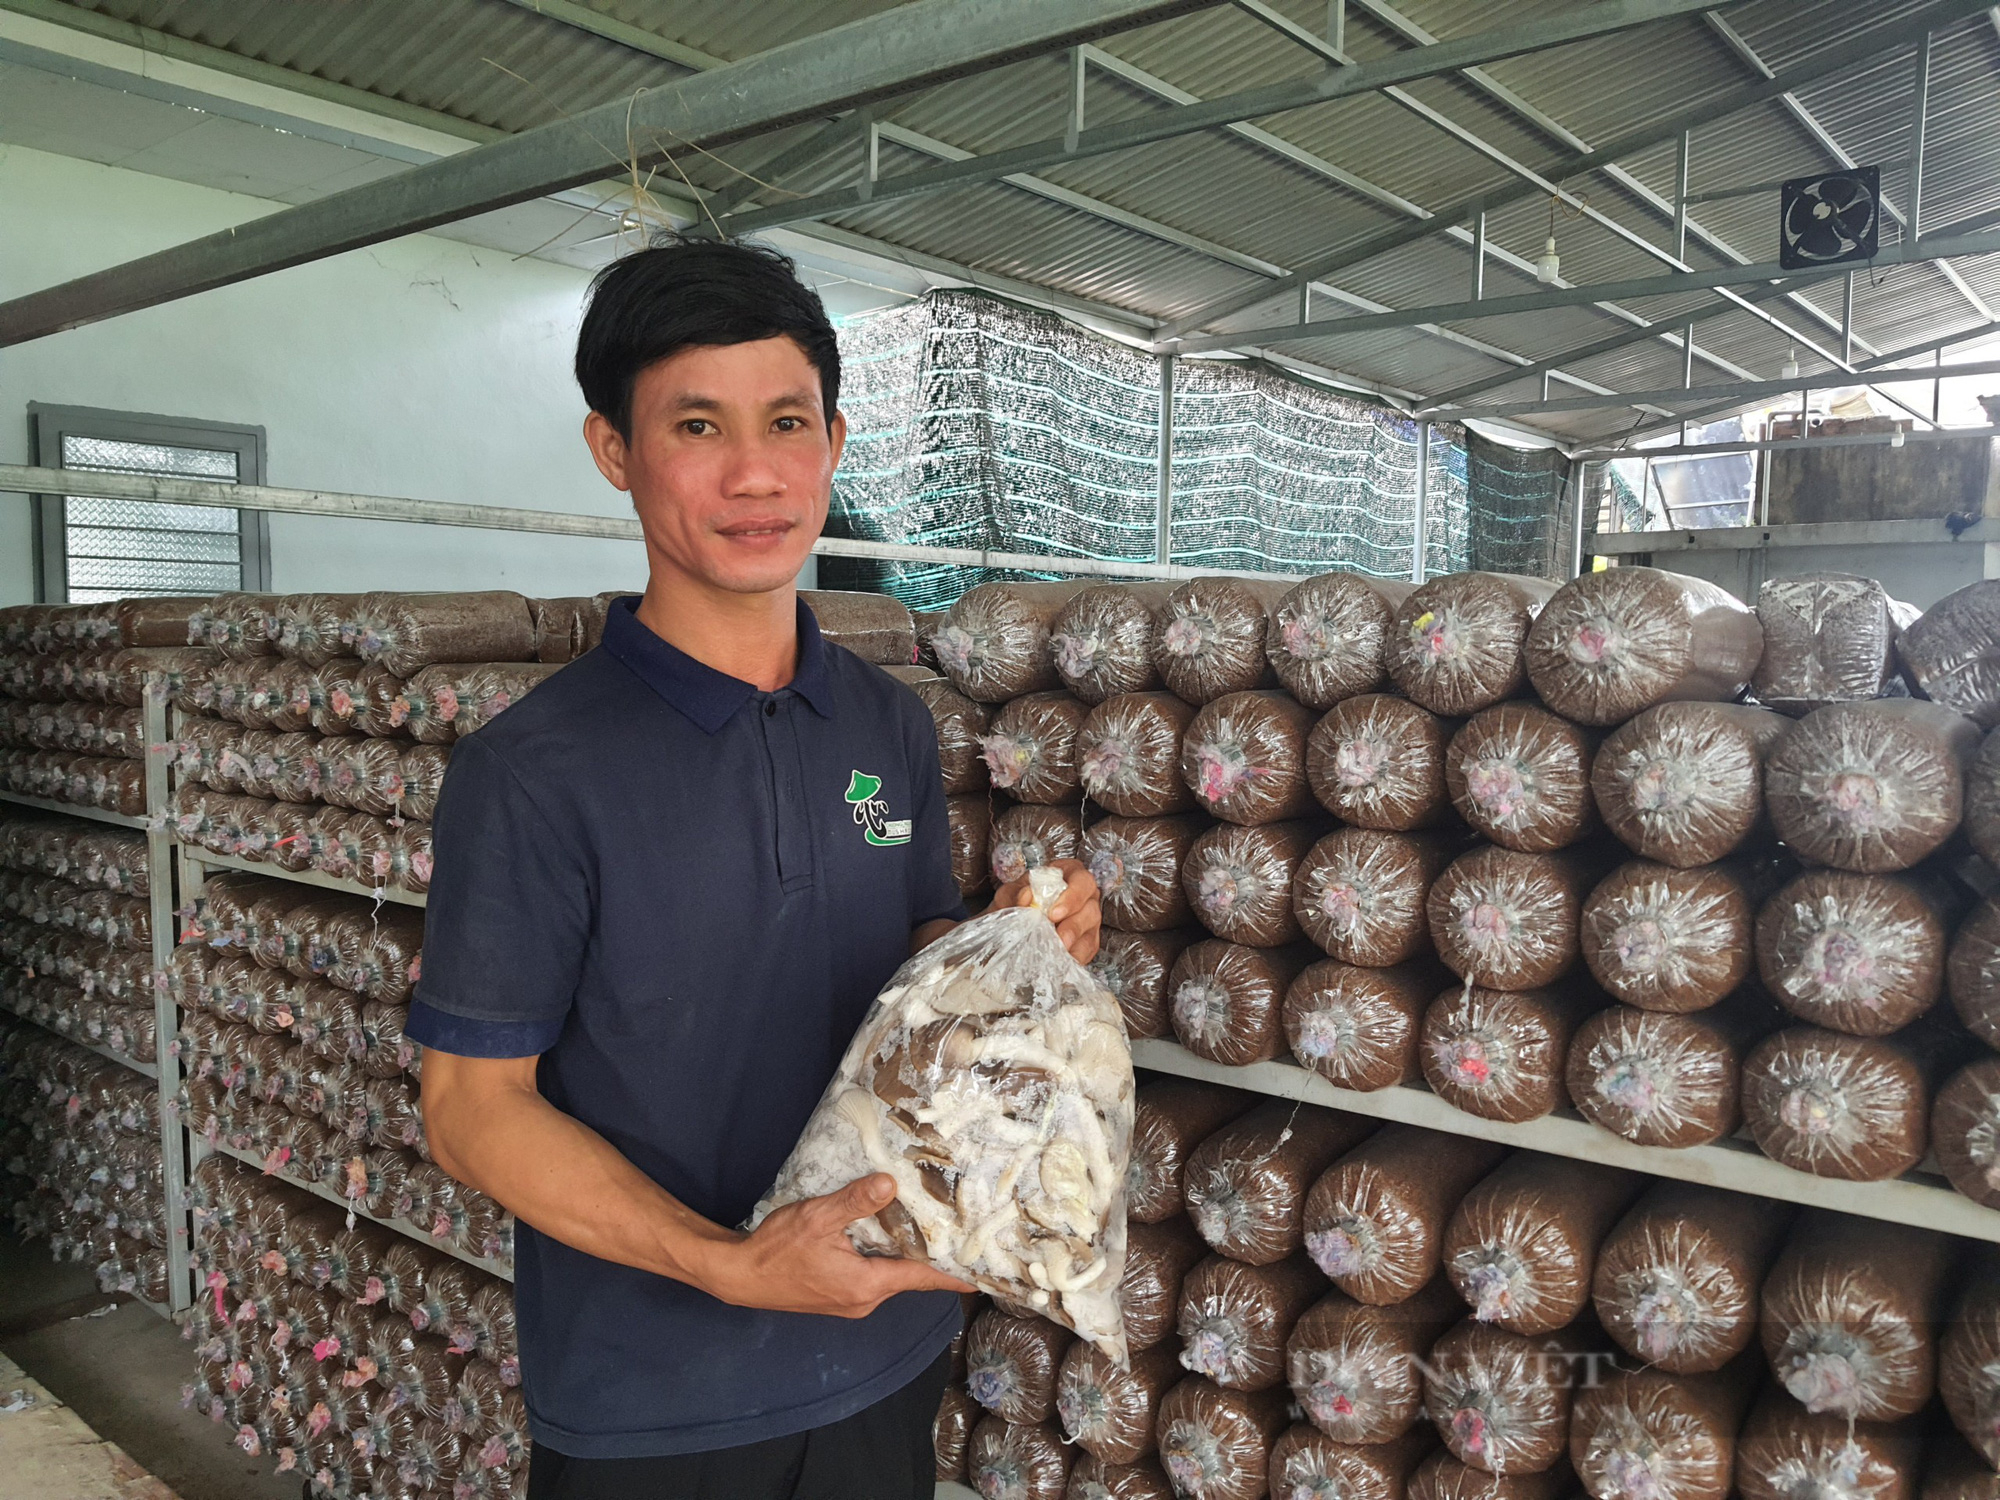 Có vốn ưu đãi tiếp sức - 9X Quảng Nam mạnh dạn khởi nghiệp trồng nấm, cho lãi hàng trăm triệu đồng - Ảnh 5.